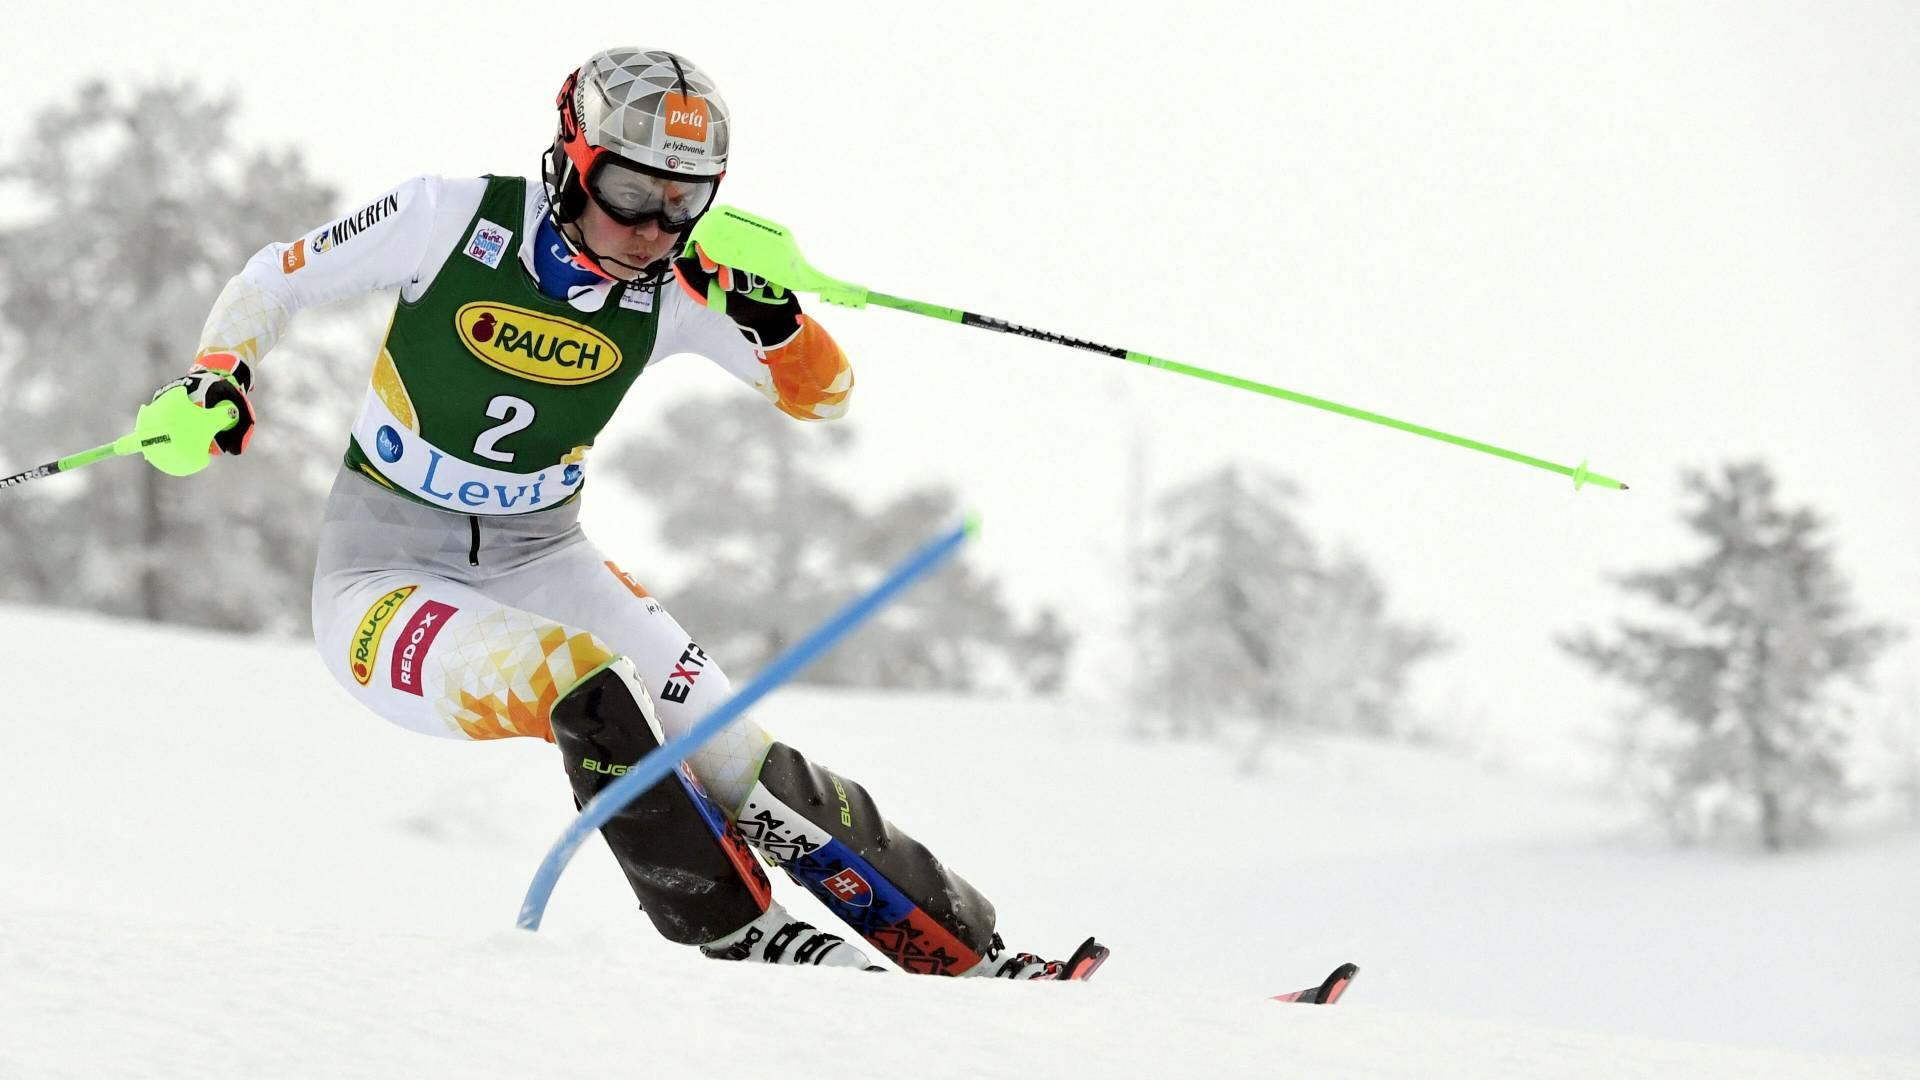 Ski alpin heute live Die Übertragung der Männer und Frauen live im TV und LIVE-STREAM Goal Deutschland